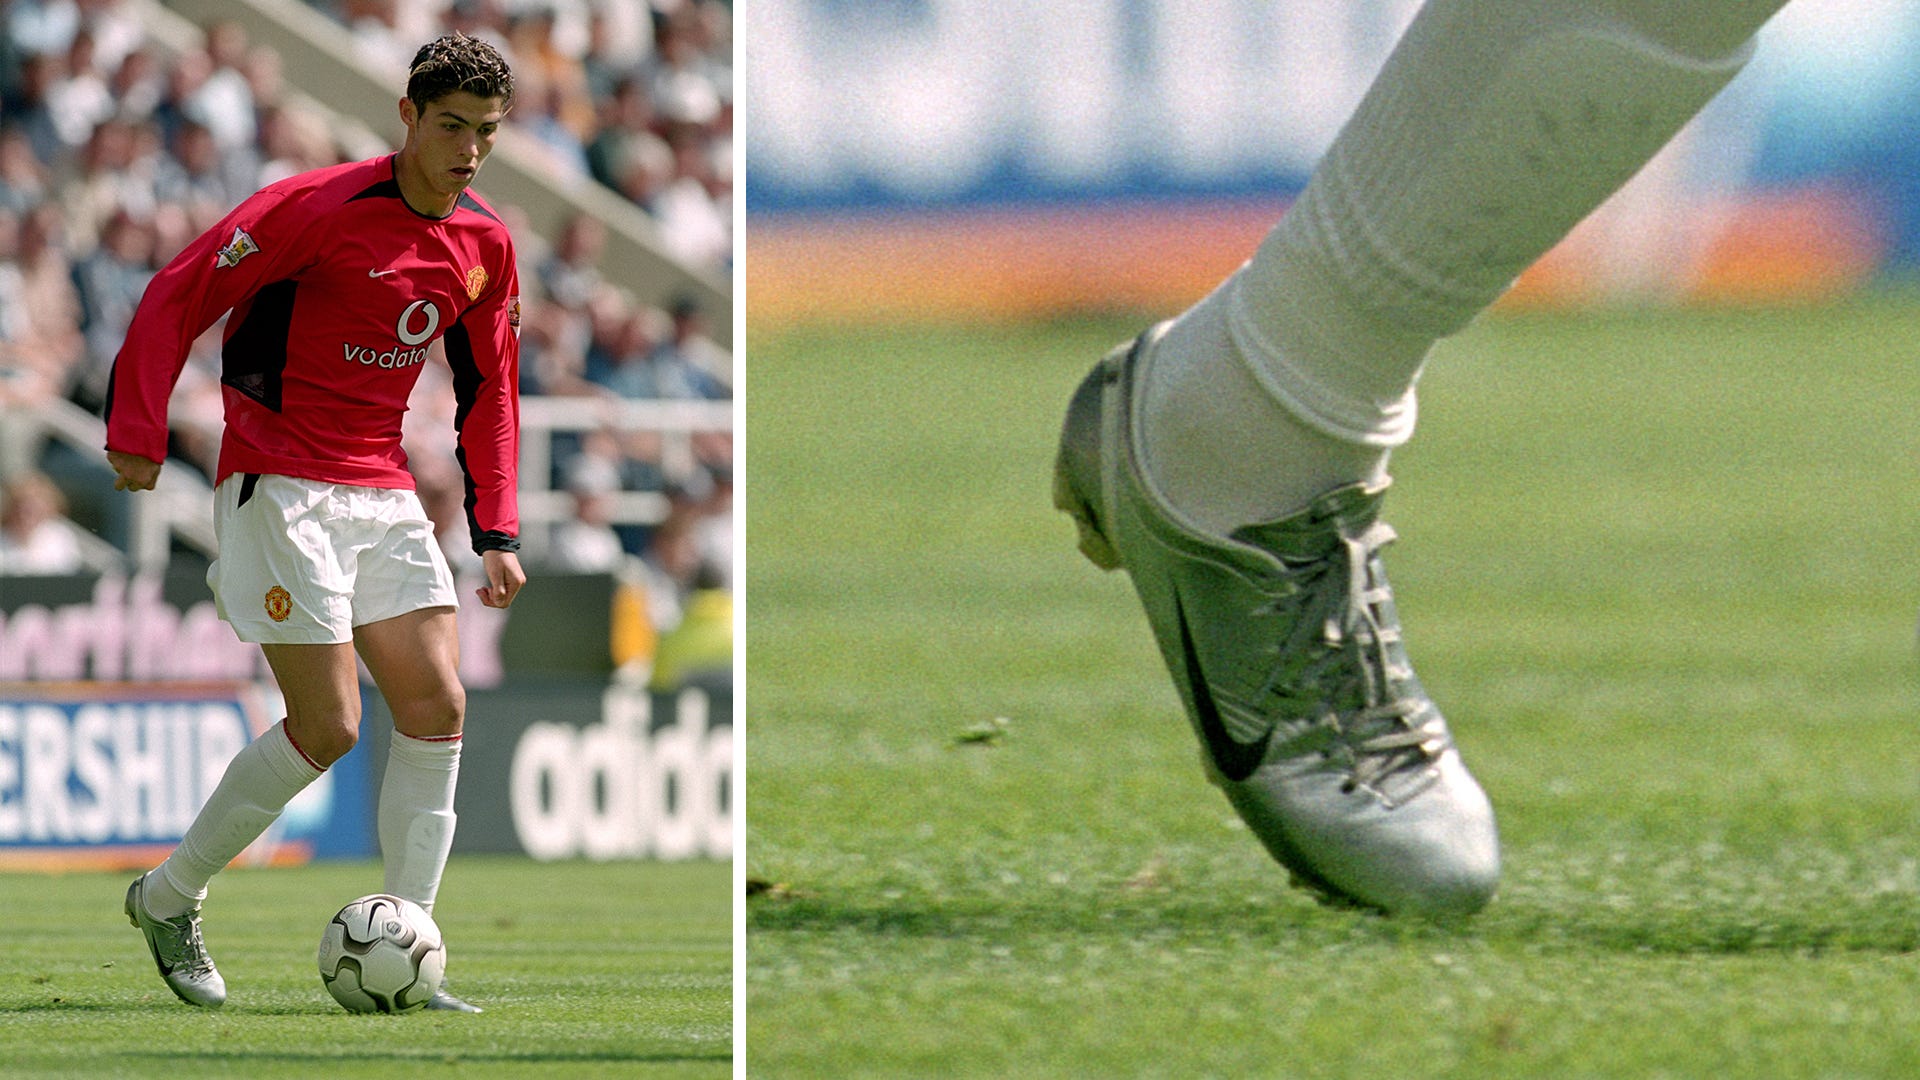 escena Campaña práctica La historia de amor de Cristiano Ronaldo y sus botines Nike Mercurial |  Goal.com Colombia